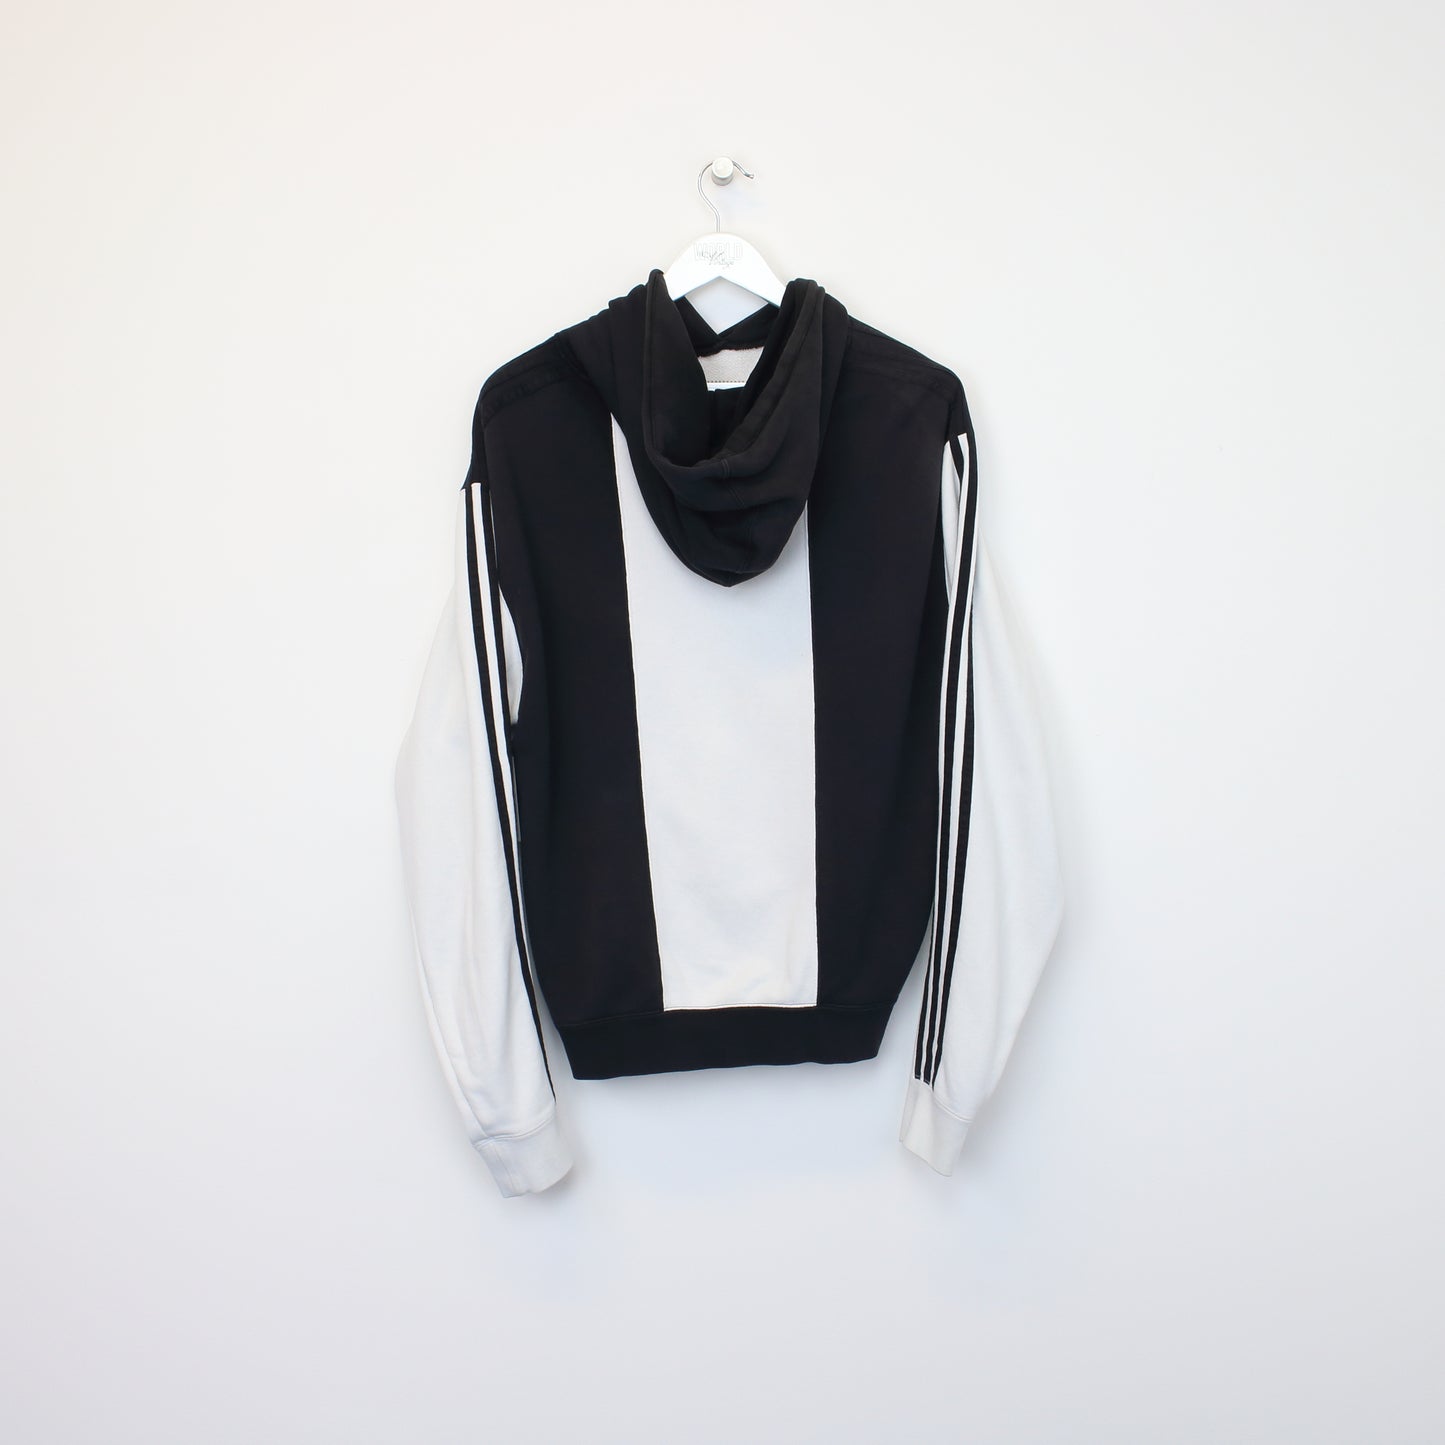 Vintage Adidas hoodie in black and white. Best fit M